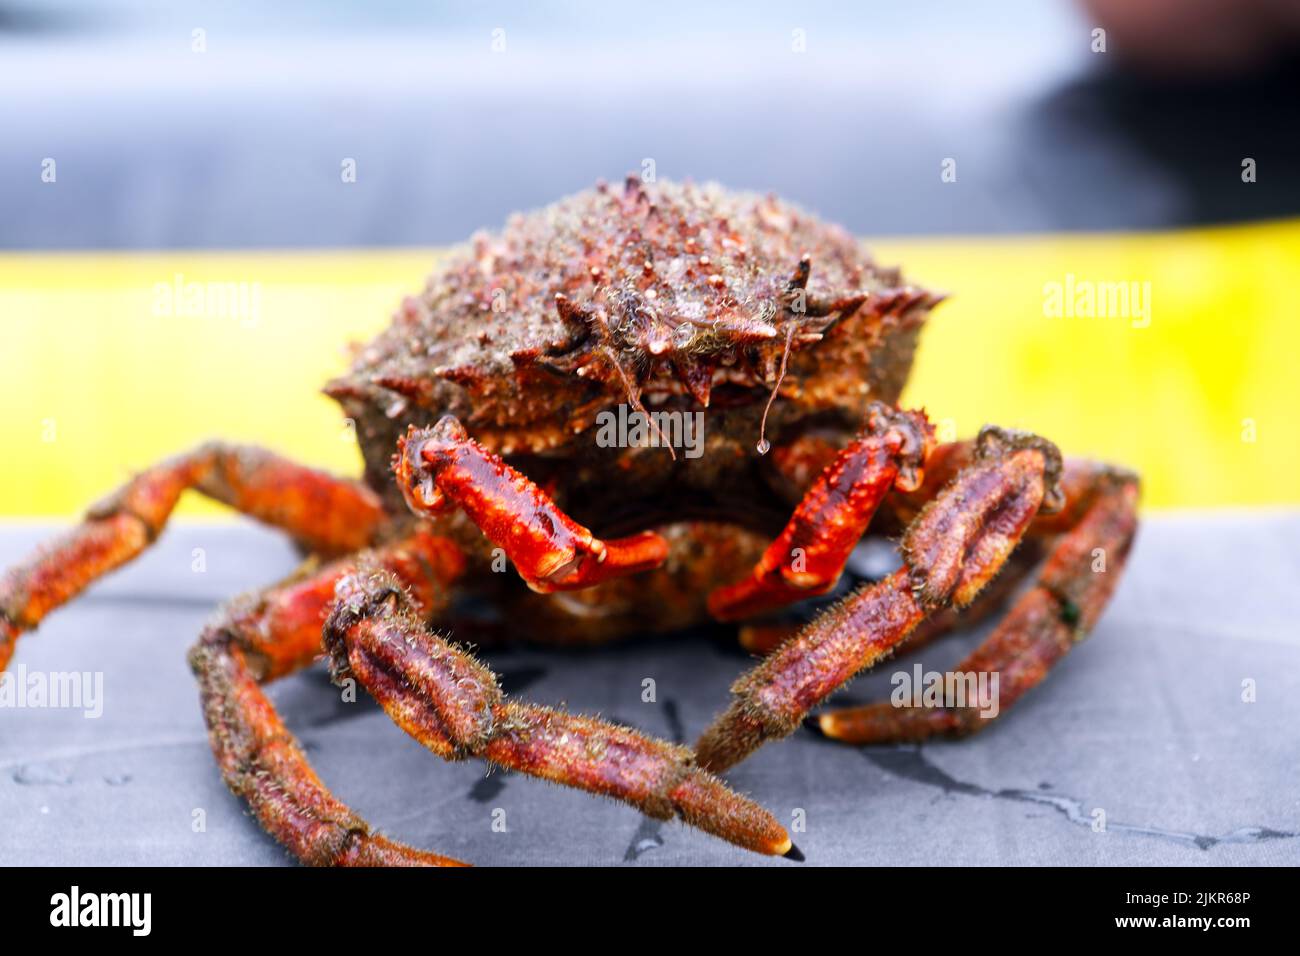 Crabe araignée (Maja brachydactyla) au large de la côte de l'île de Mull dans les Hébrides intérieures d'Écosse Banque D'Images